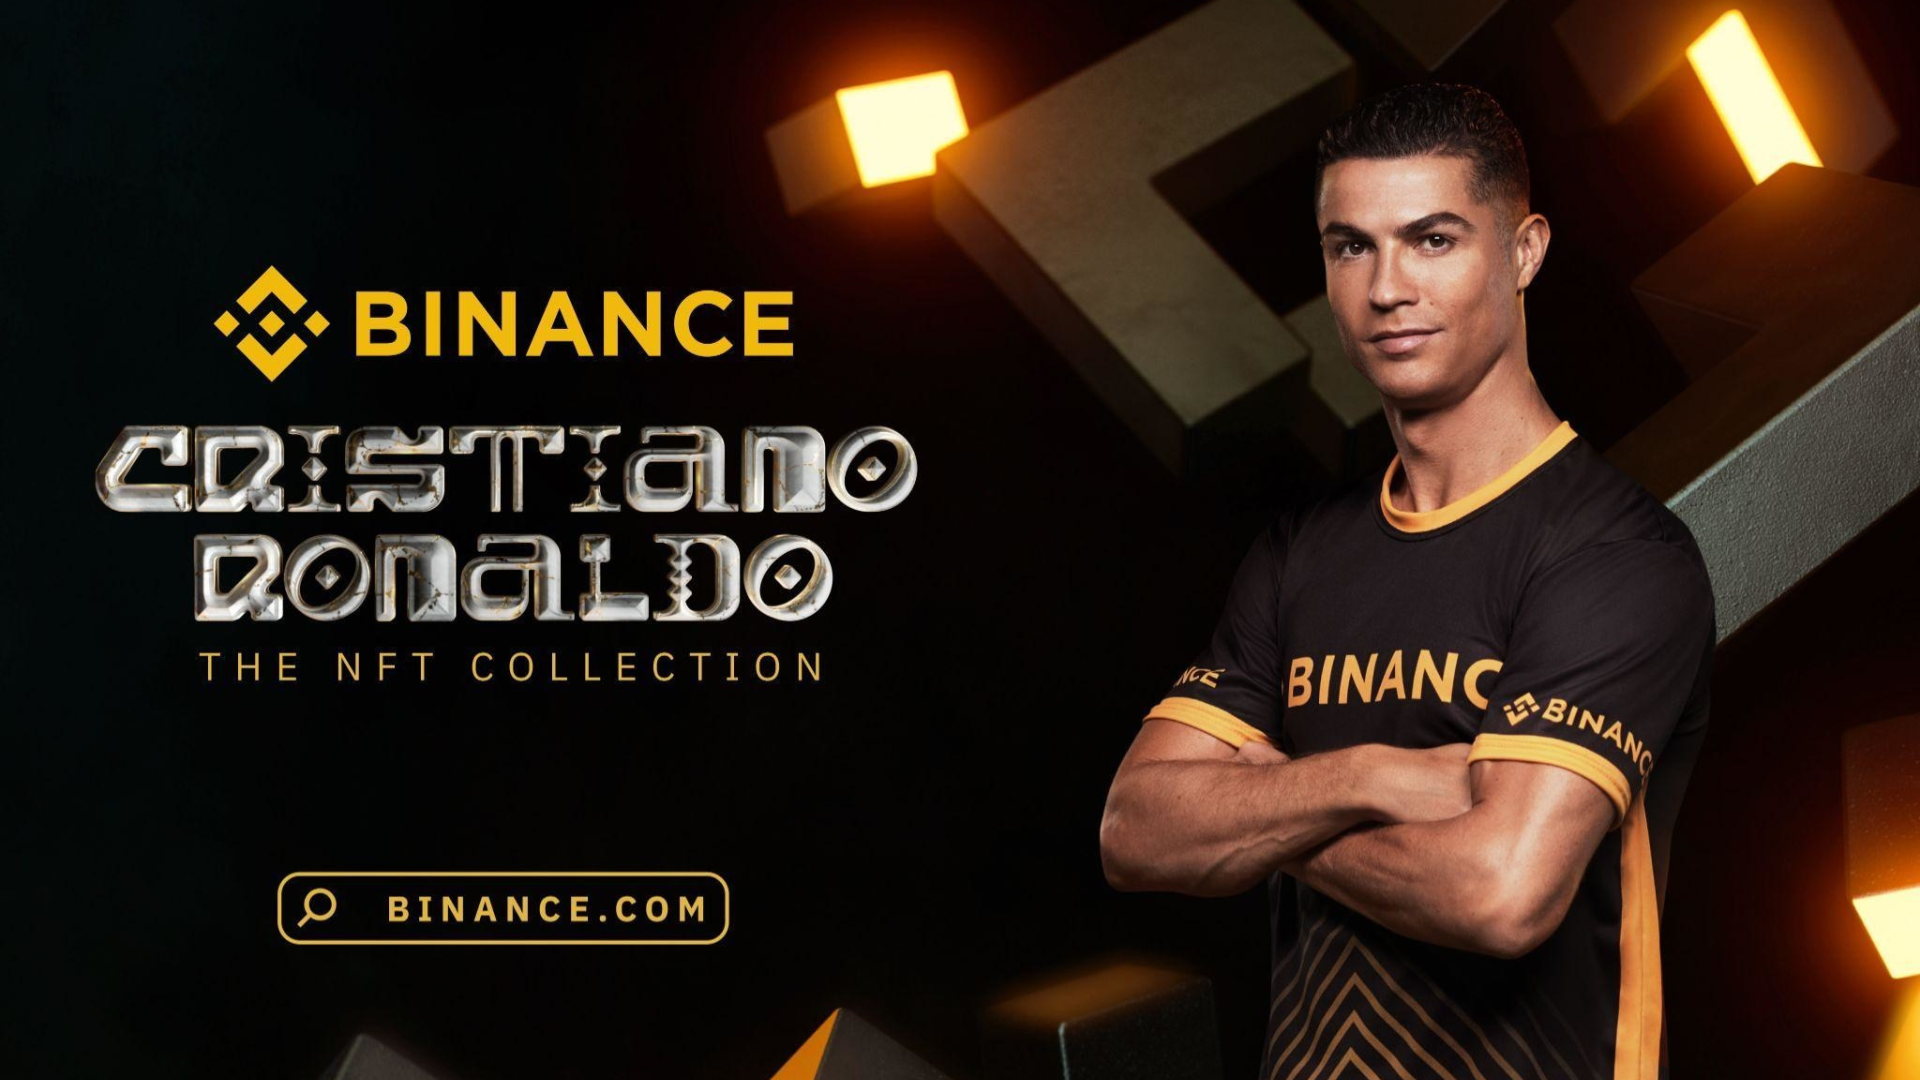 Melihat koleksi NFT Cristiano Ronaldo dengan Binance.